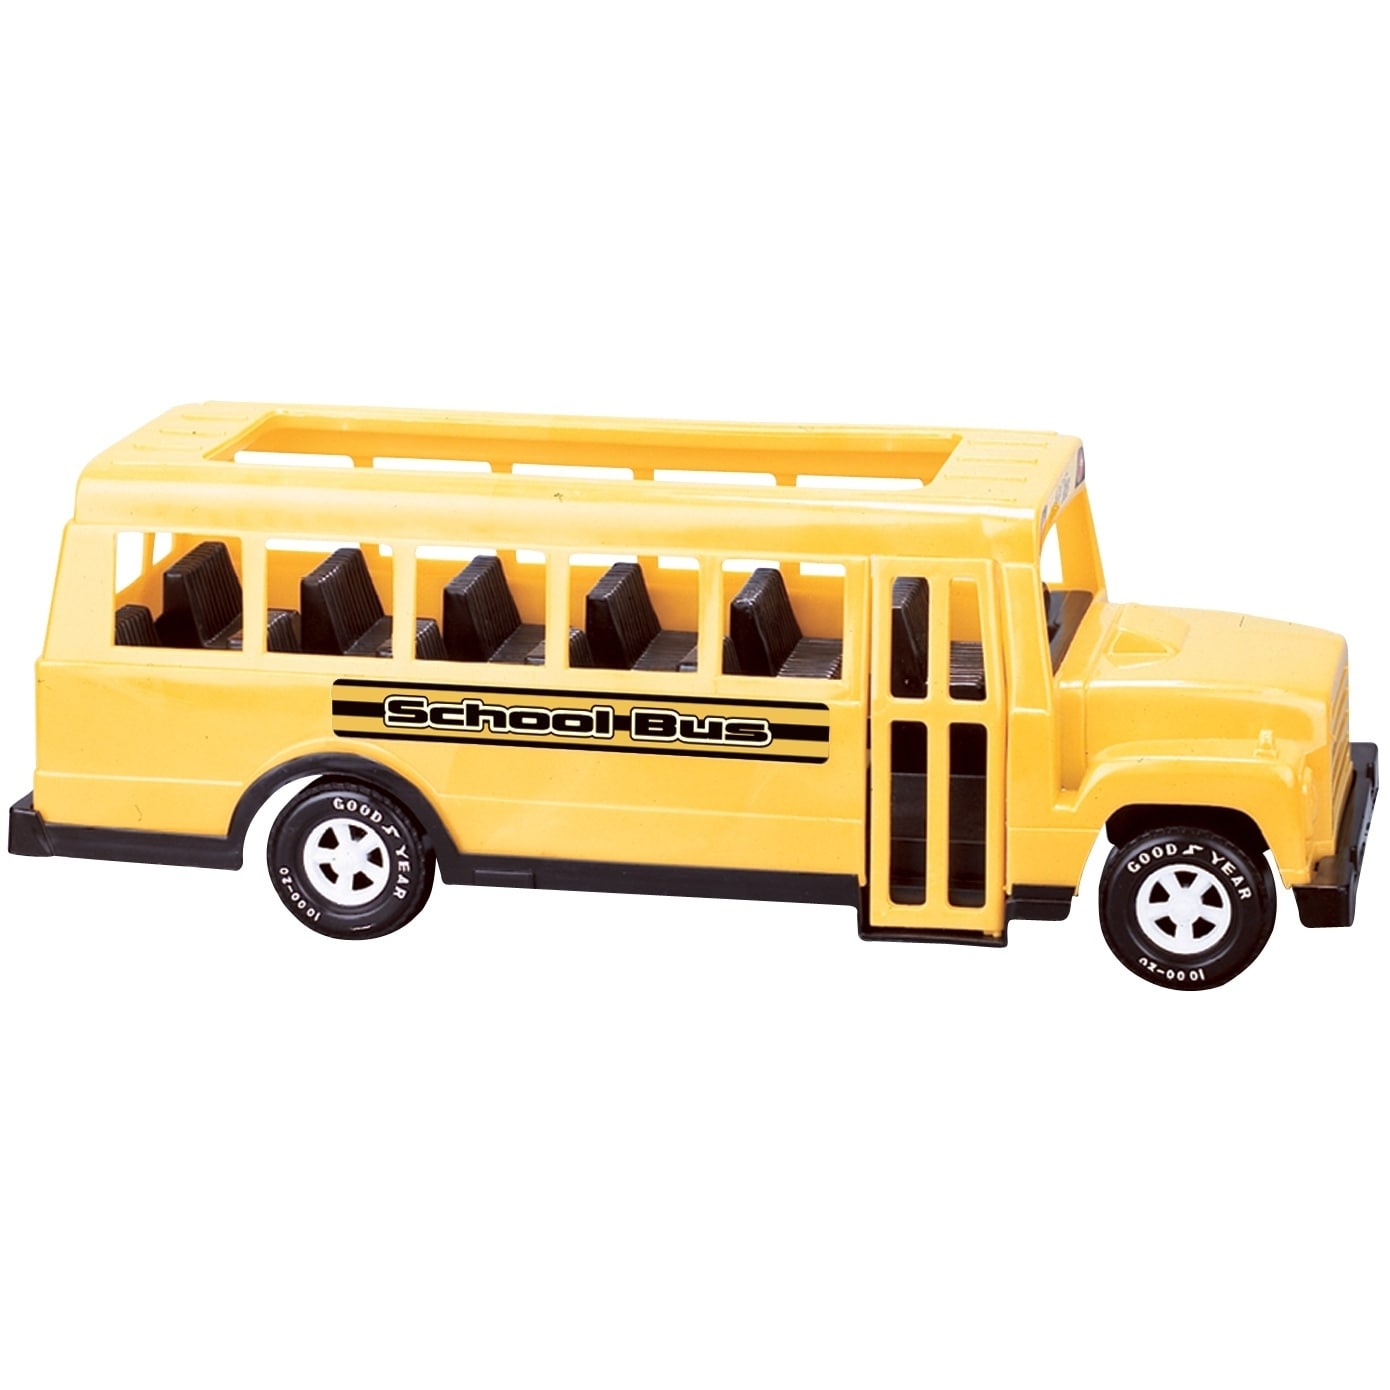 a toy school bus